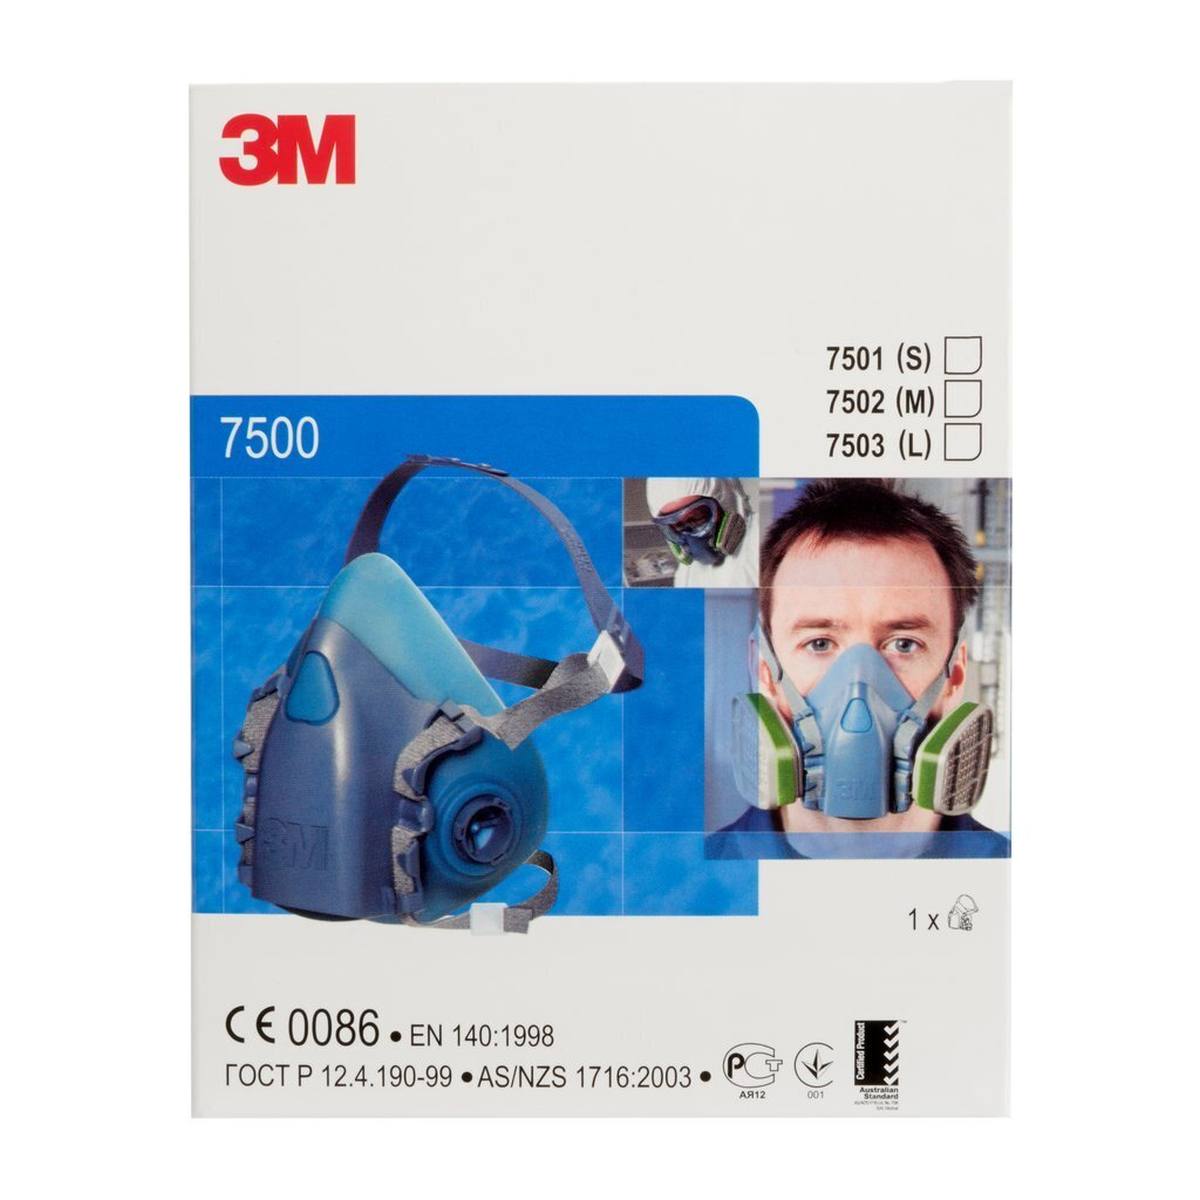 3M 7501S Halfgelaatsmasker lichaam siliconen / thermoplastisch polyester maat S